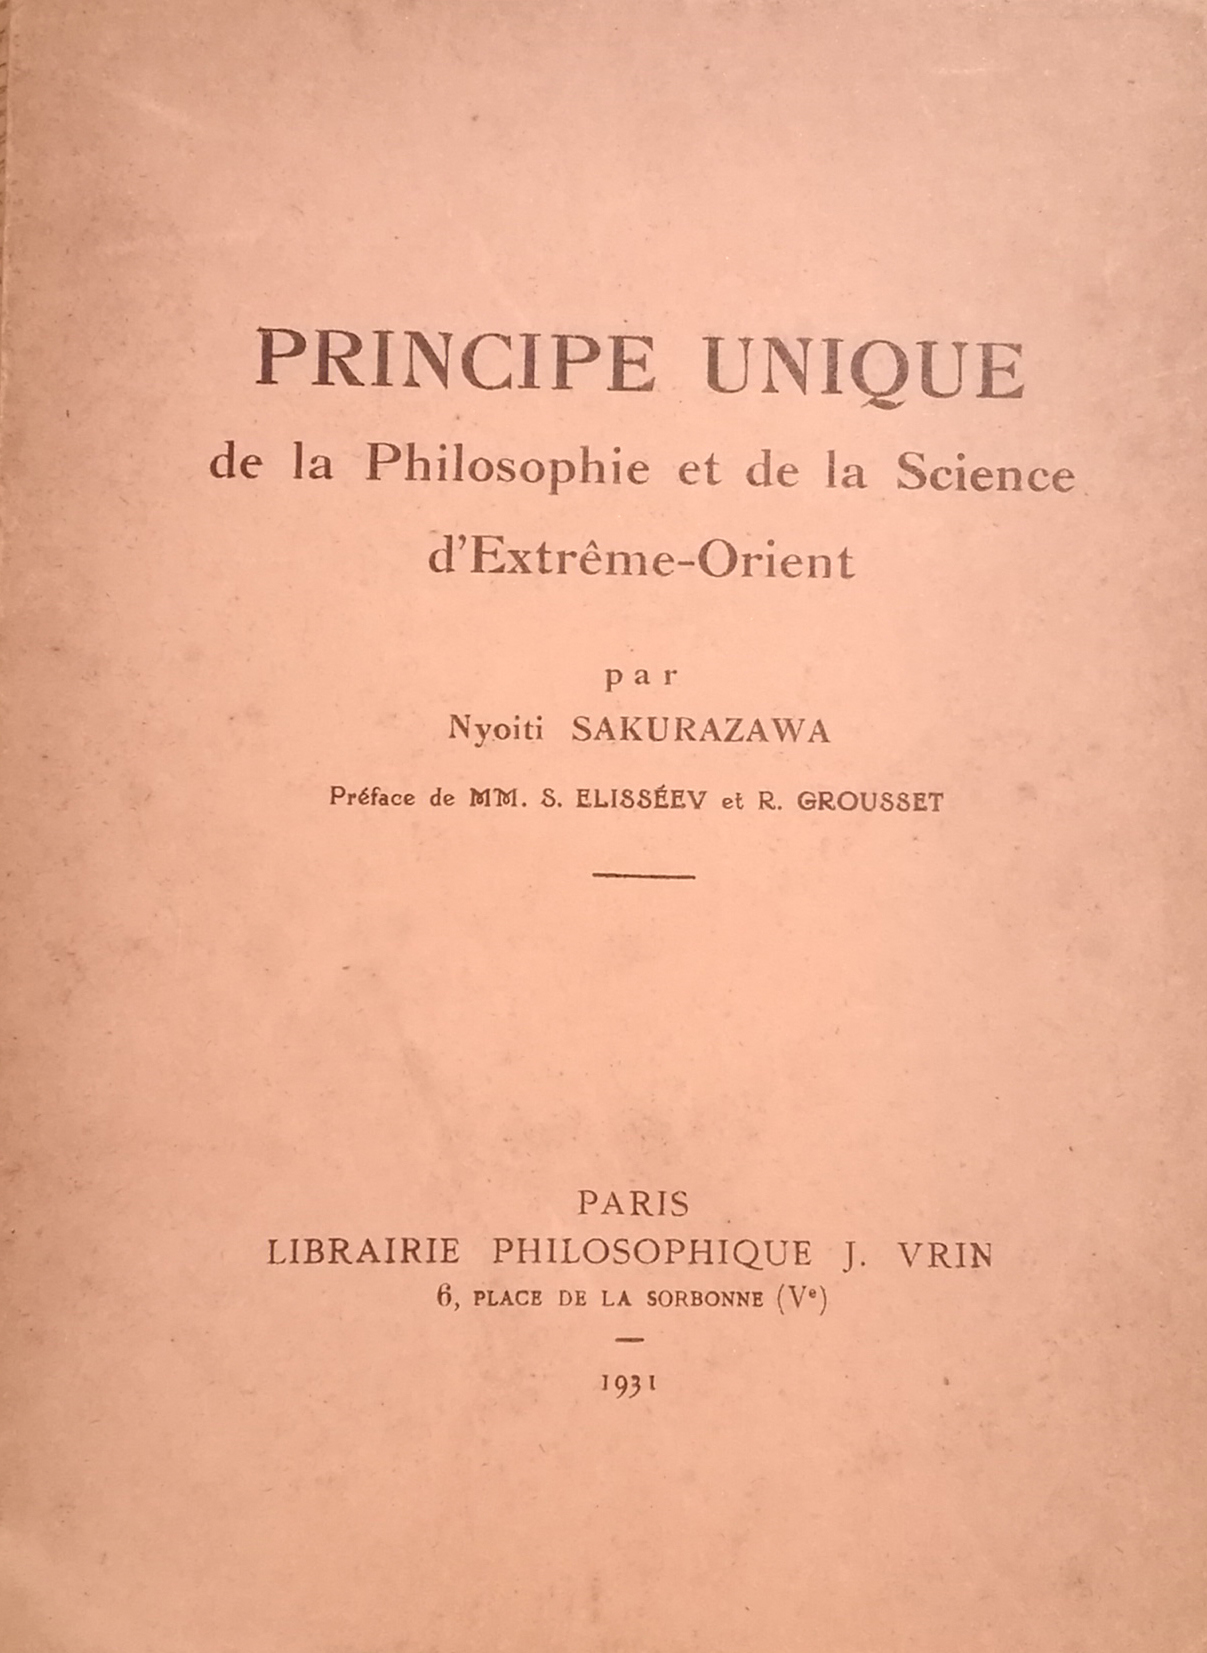 桜沢初の世界デビュー作「Le Principe Unique de la Science et de la Philosophie d' Extreme- Orient（ 東洋の哲学及び科学の無双 原理）」